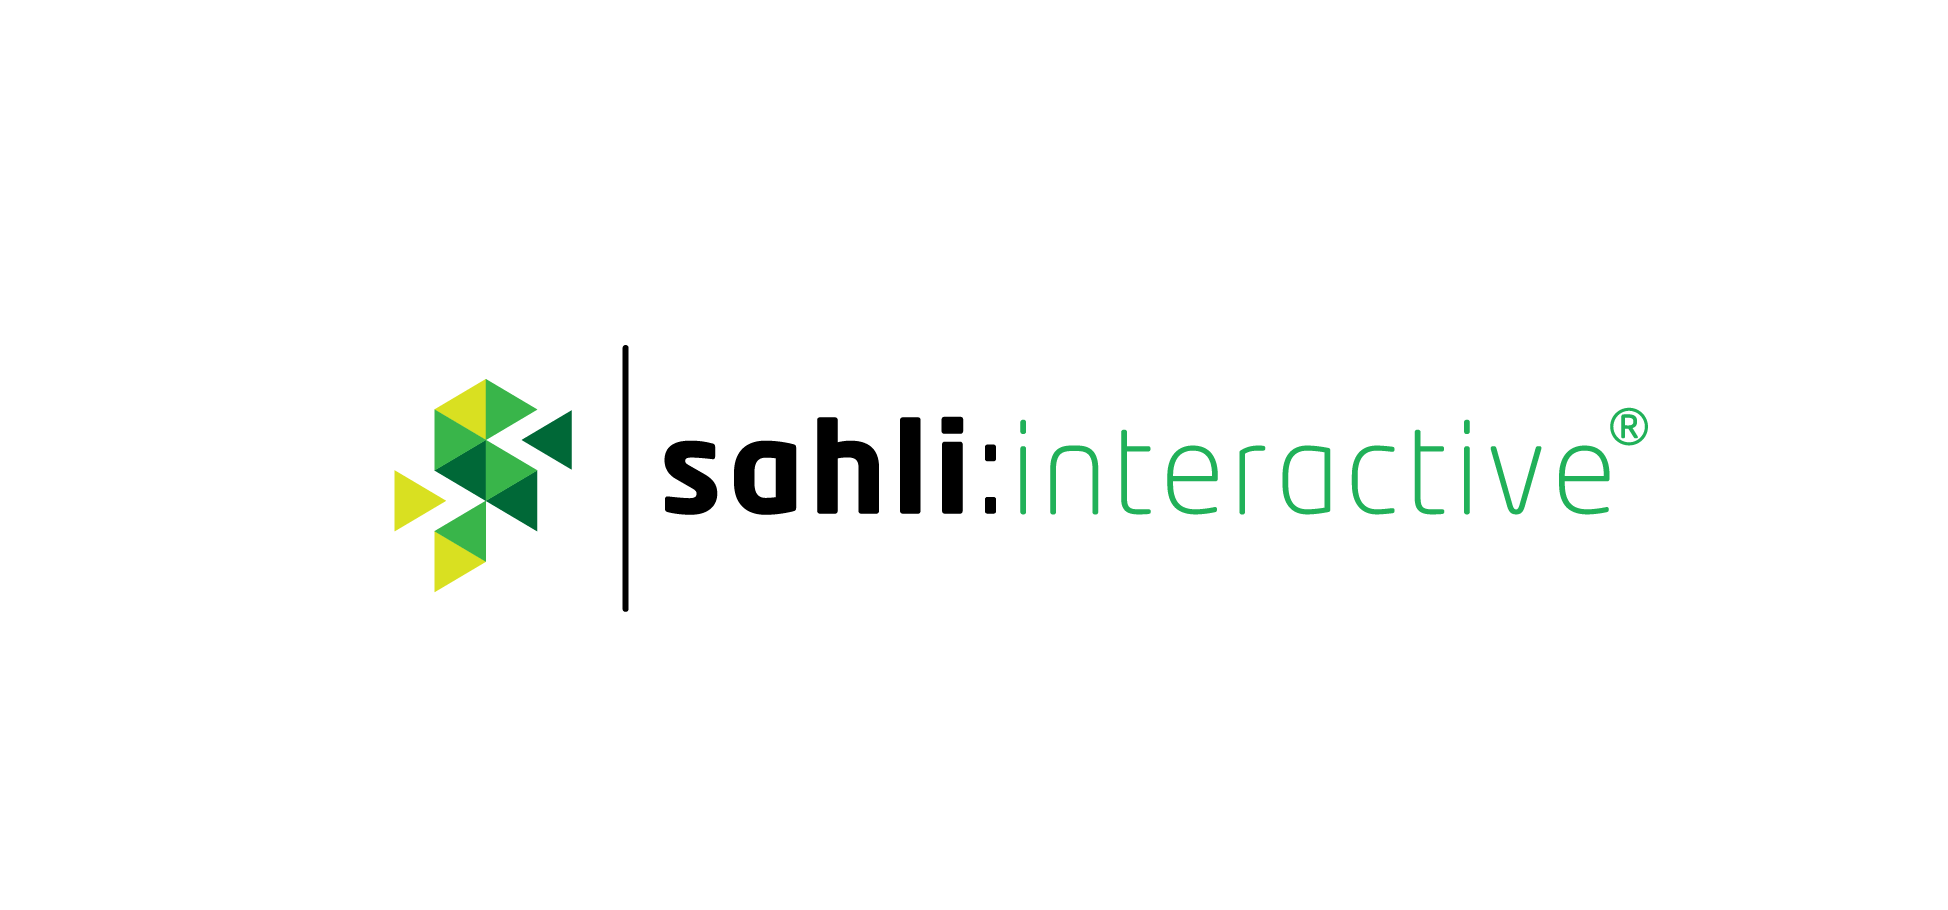 sahli:interactive